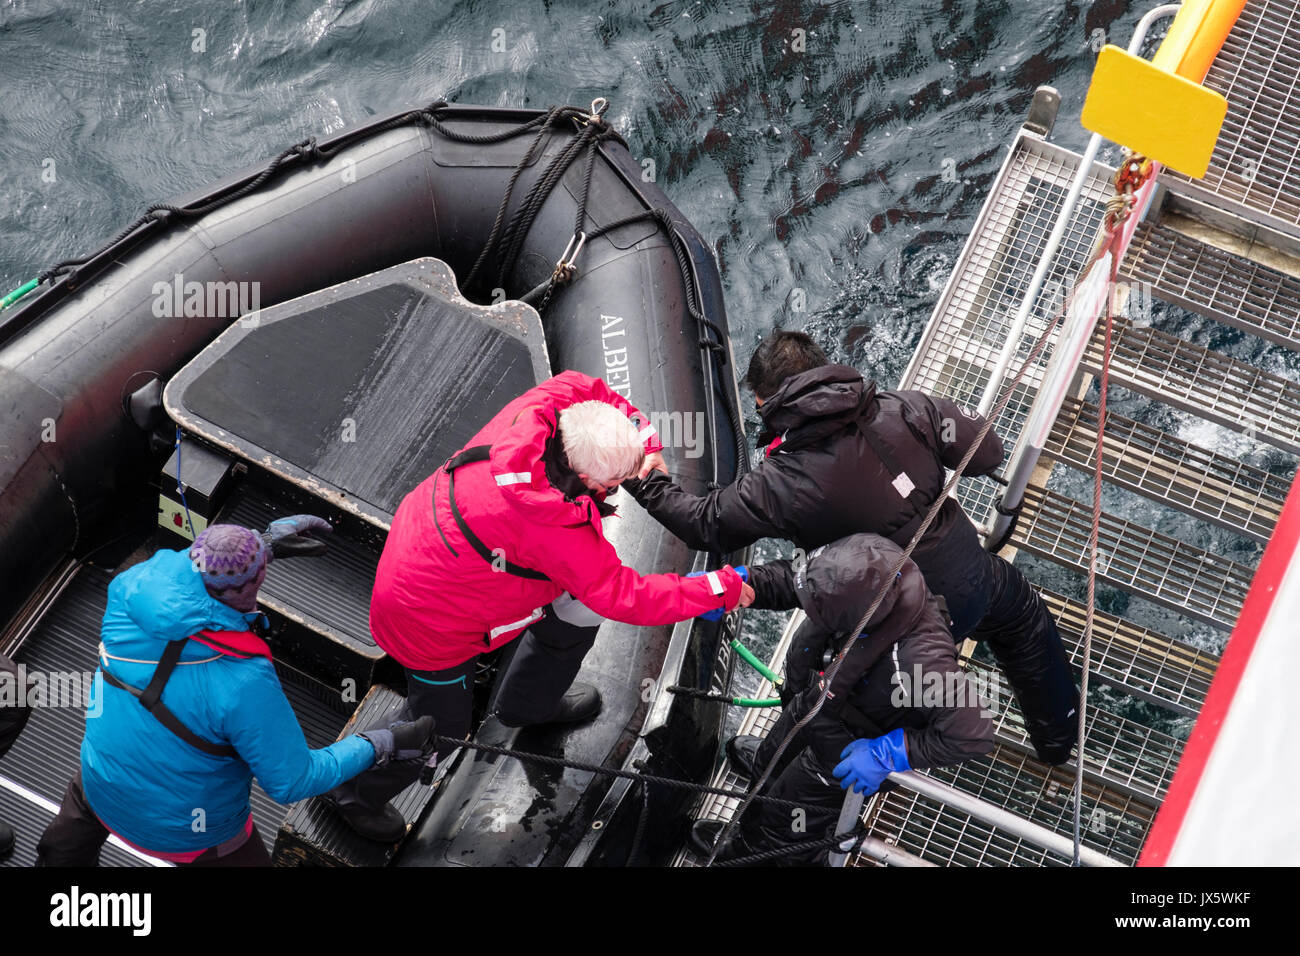 G Abenteuer Expedition Cruise Ship Passagier von einem Zodiac Beiboot zurück an Bord durch die Crew mit einem Matrosen grip geholfen wird. Norwegen, Skandinavien Stockfoto